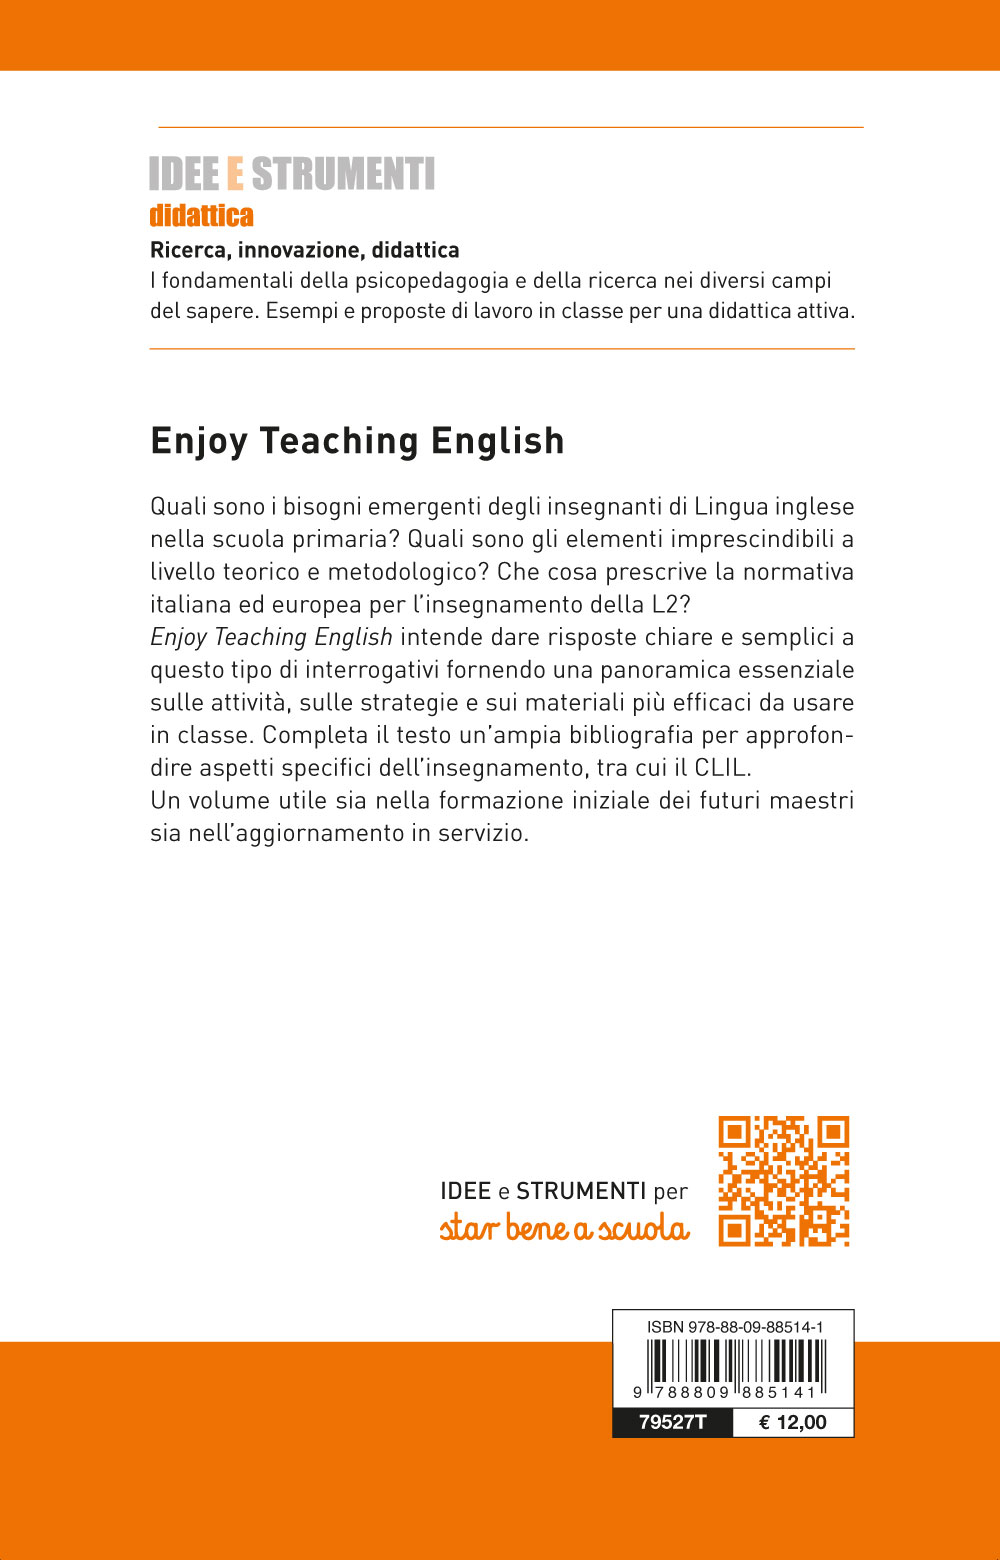 Enjoy Teaching English | Giunti Scuola